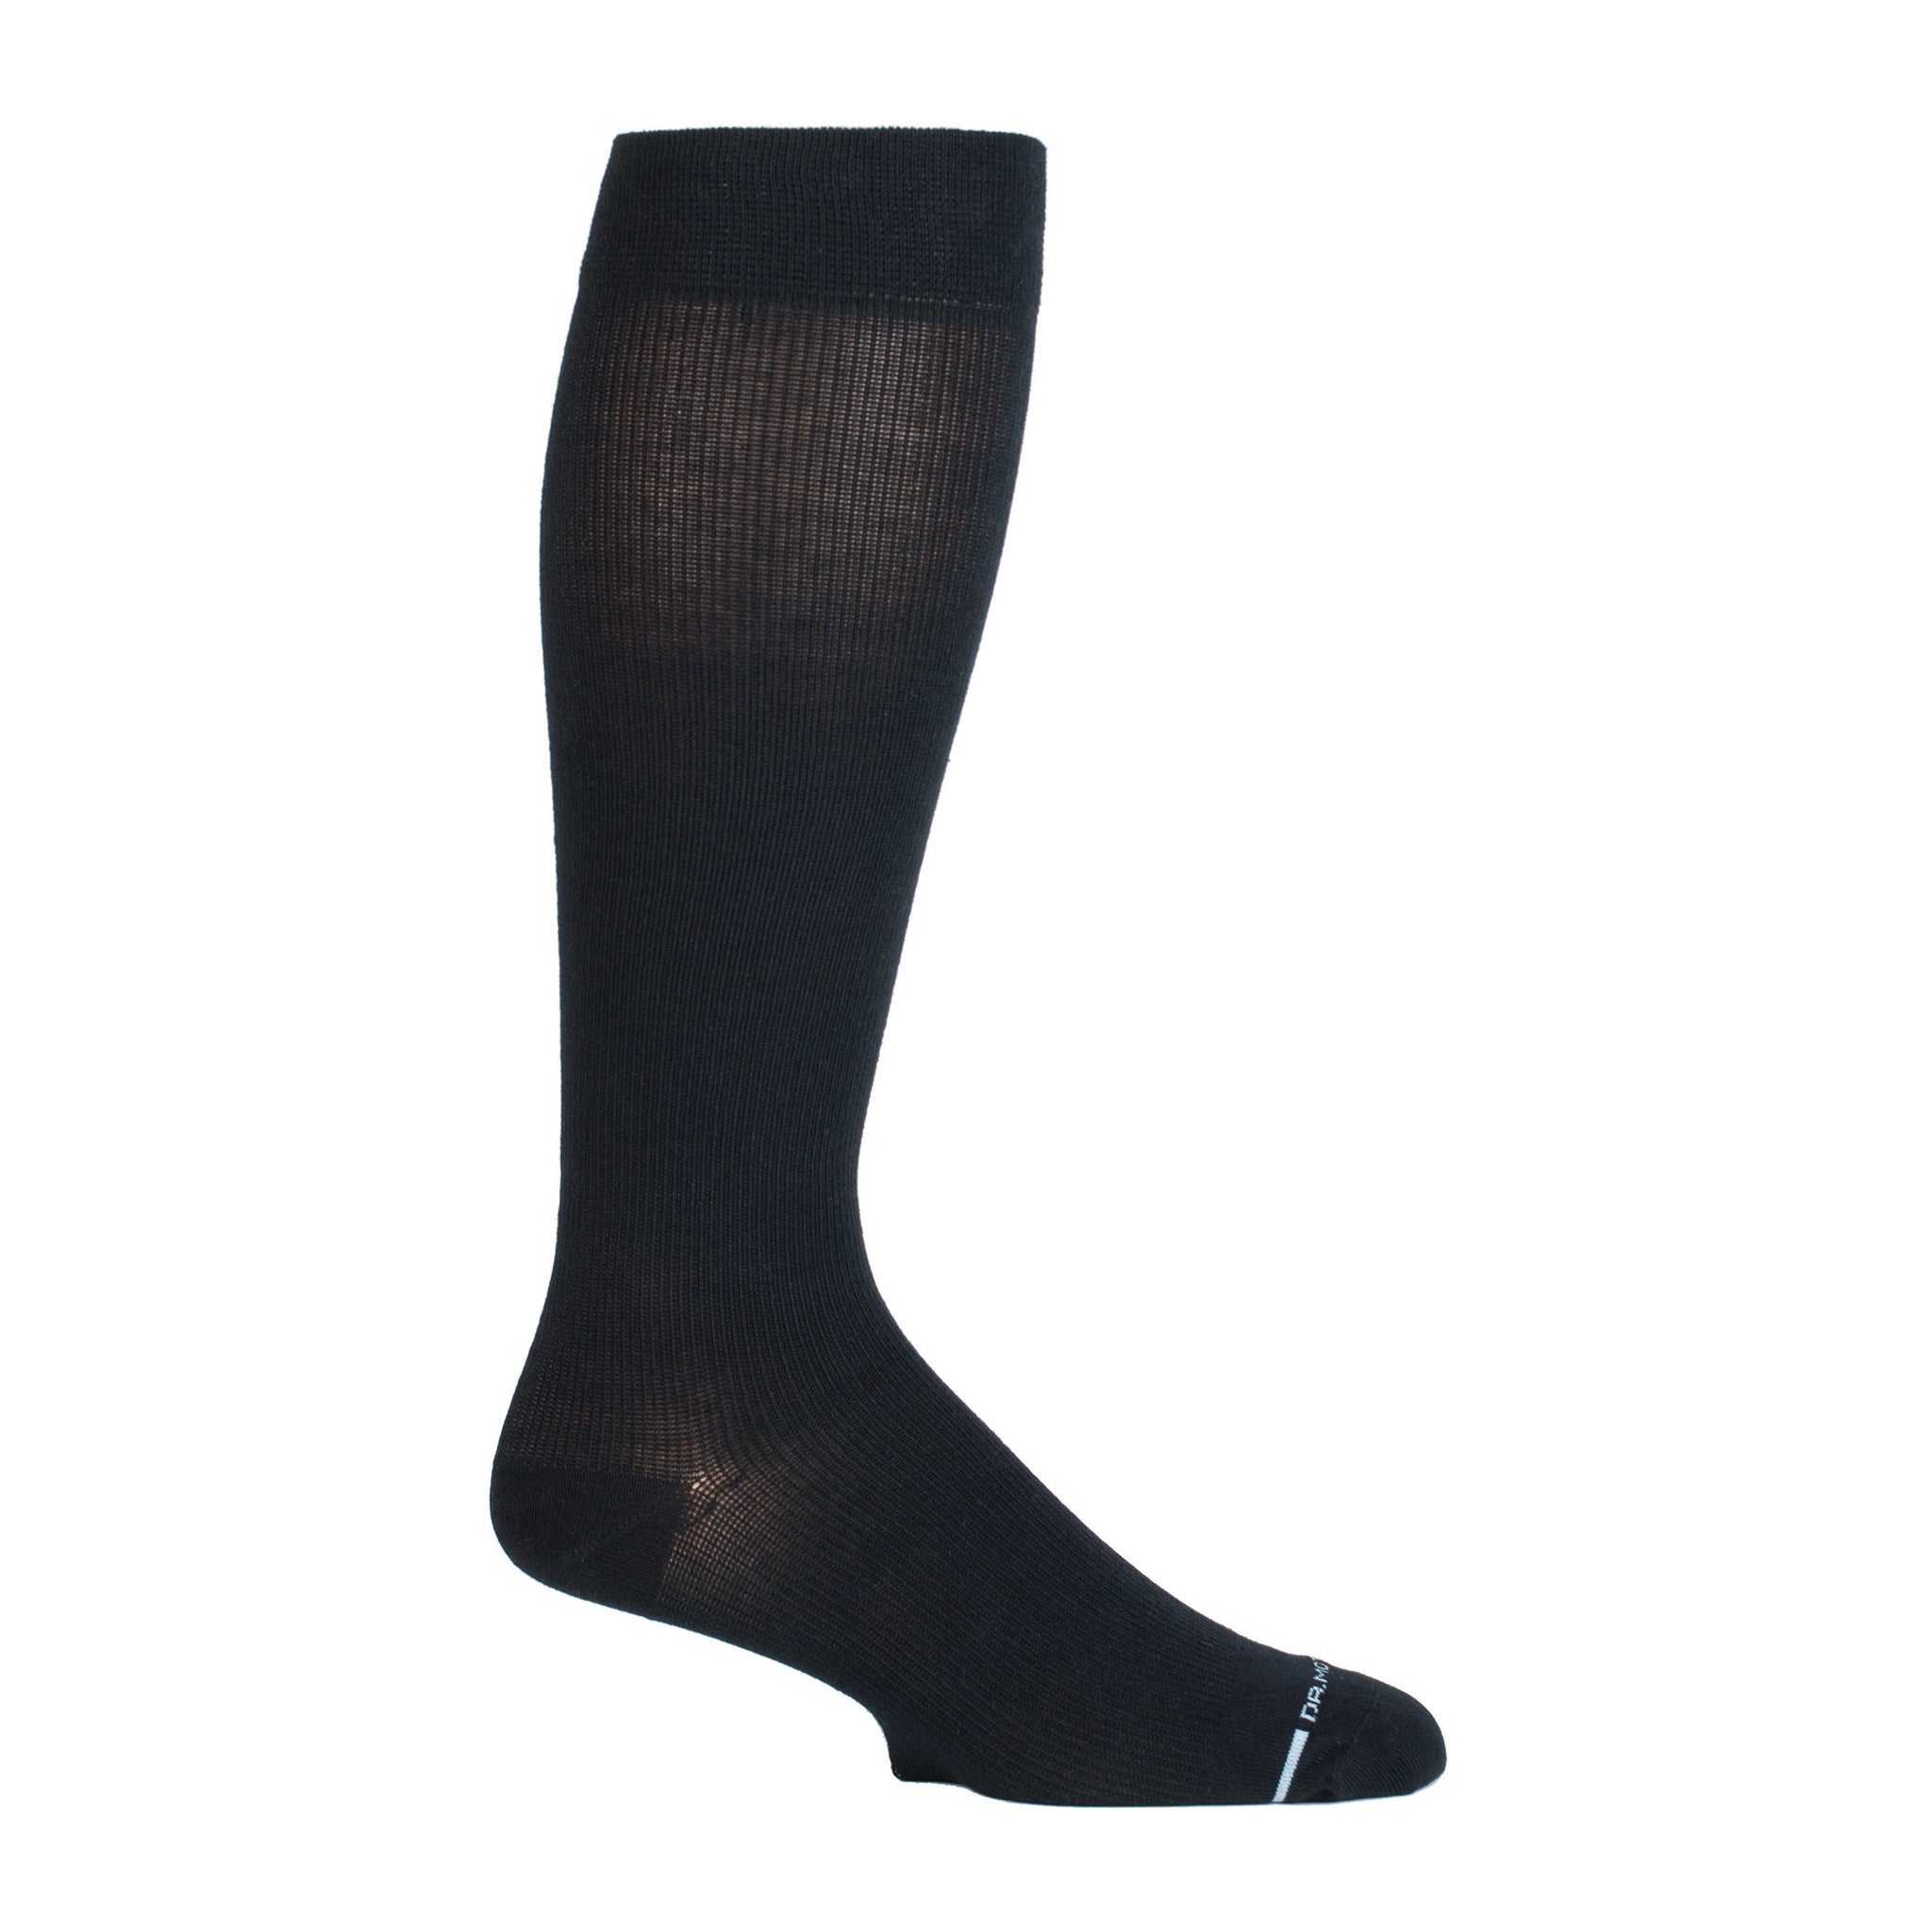 Solid Cotton Blend | Knee-High Compression Socks For Men